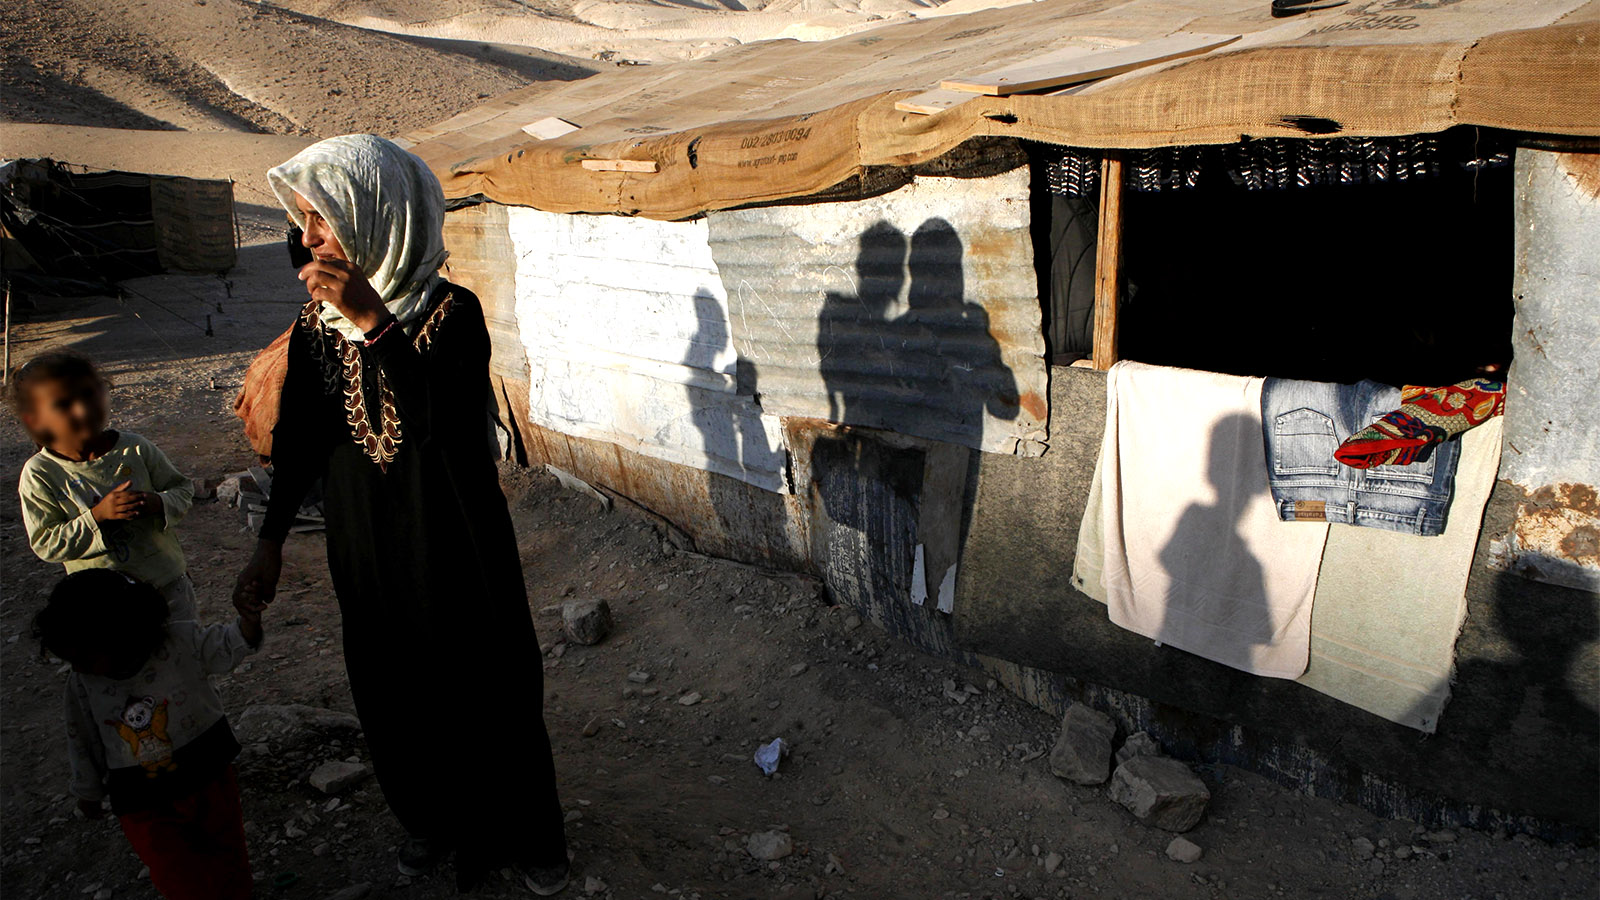 אישה וילדים בדואים בכפר לא מוכר (צילום: נתי שבות / פלאש 90).